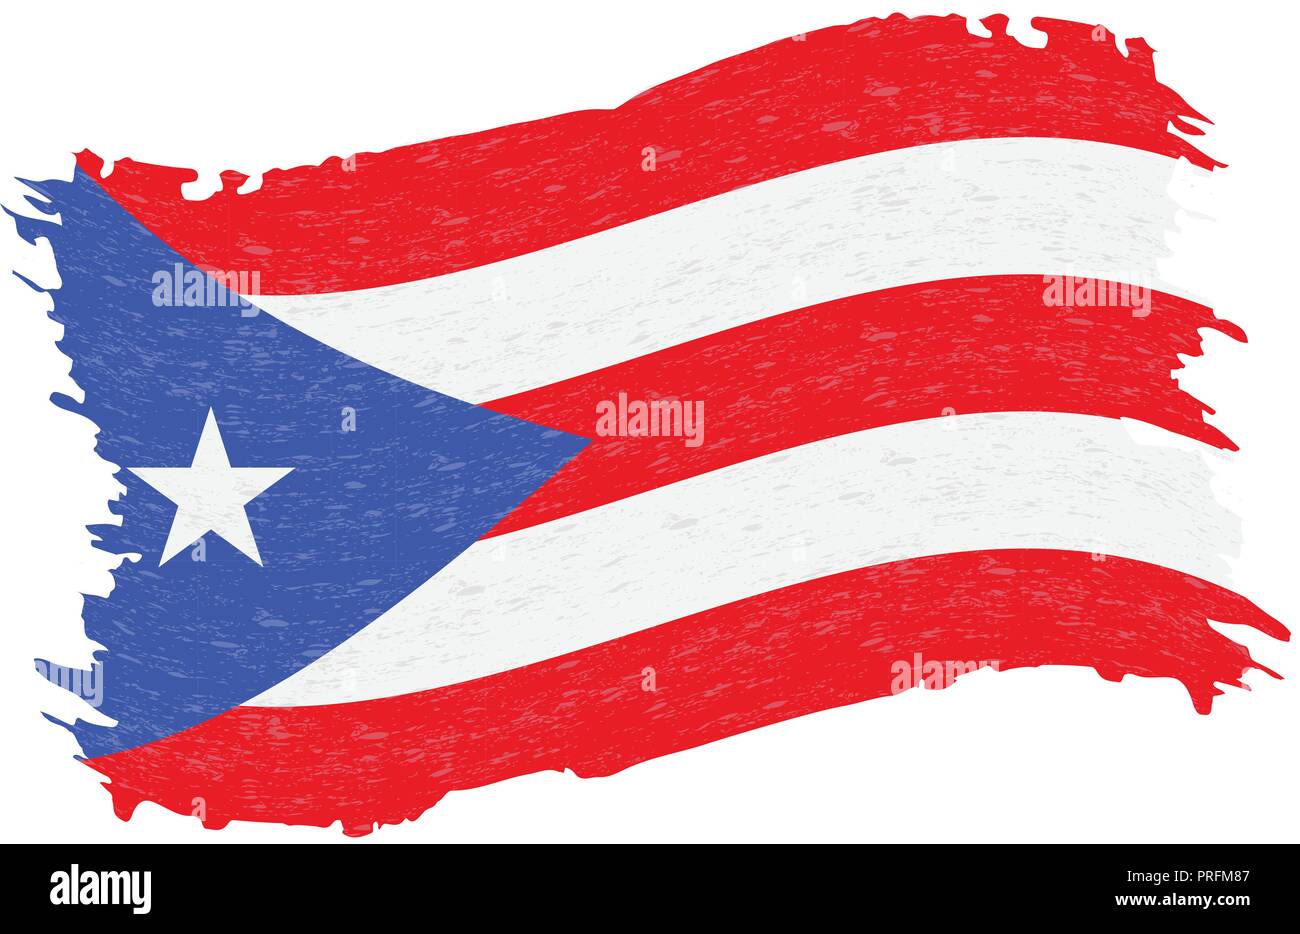 Flagge Puerto Rico, Grunge abstrakten Pinselstrich isoliert auf einem weißen Hintergrund. Vector Illustration. Stock Vektor